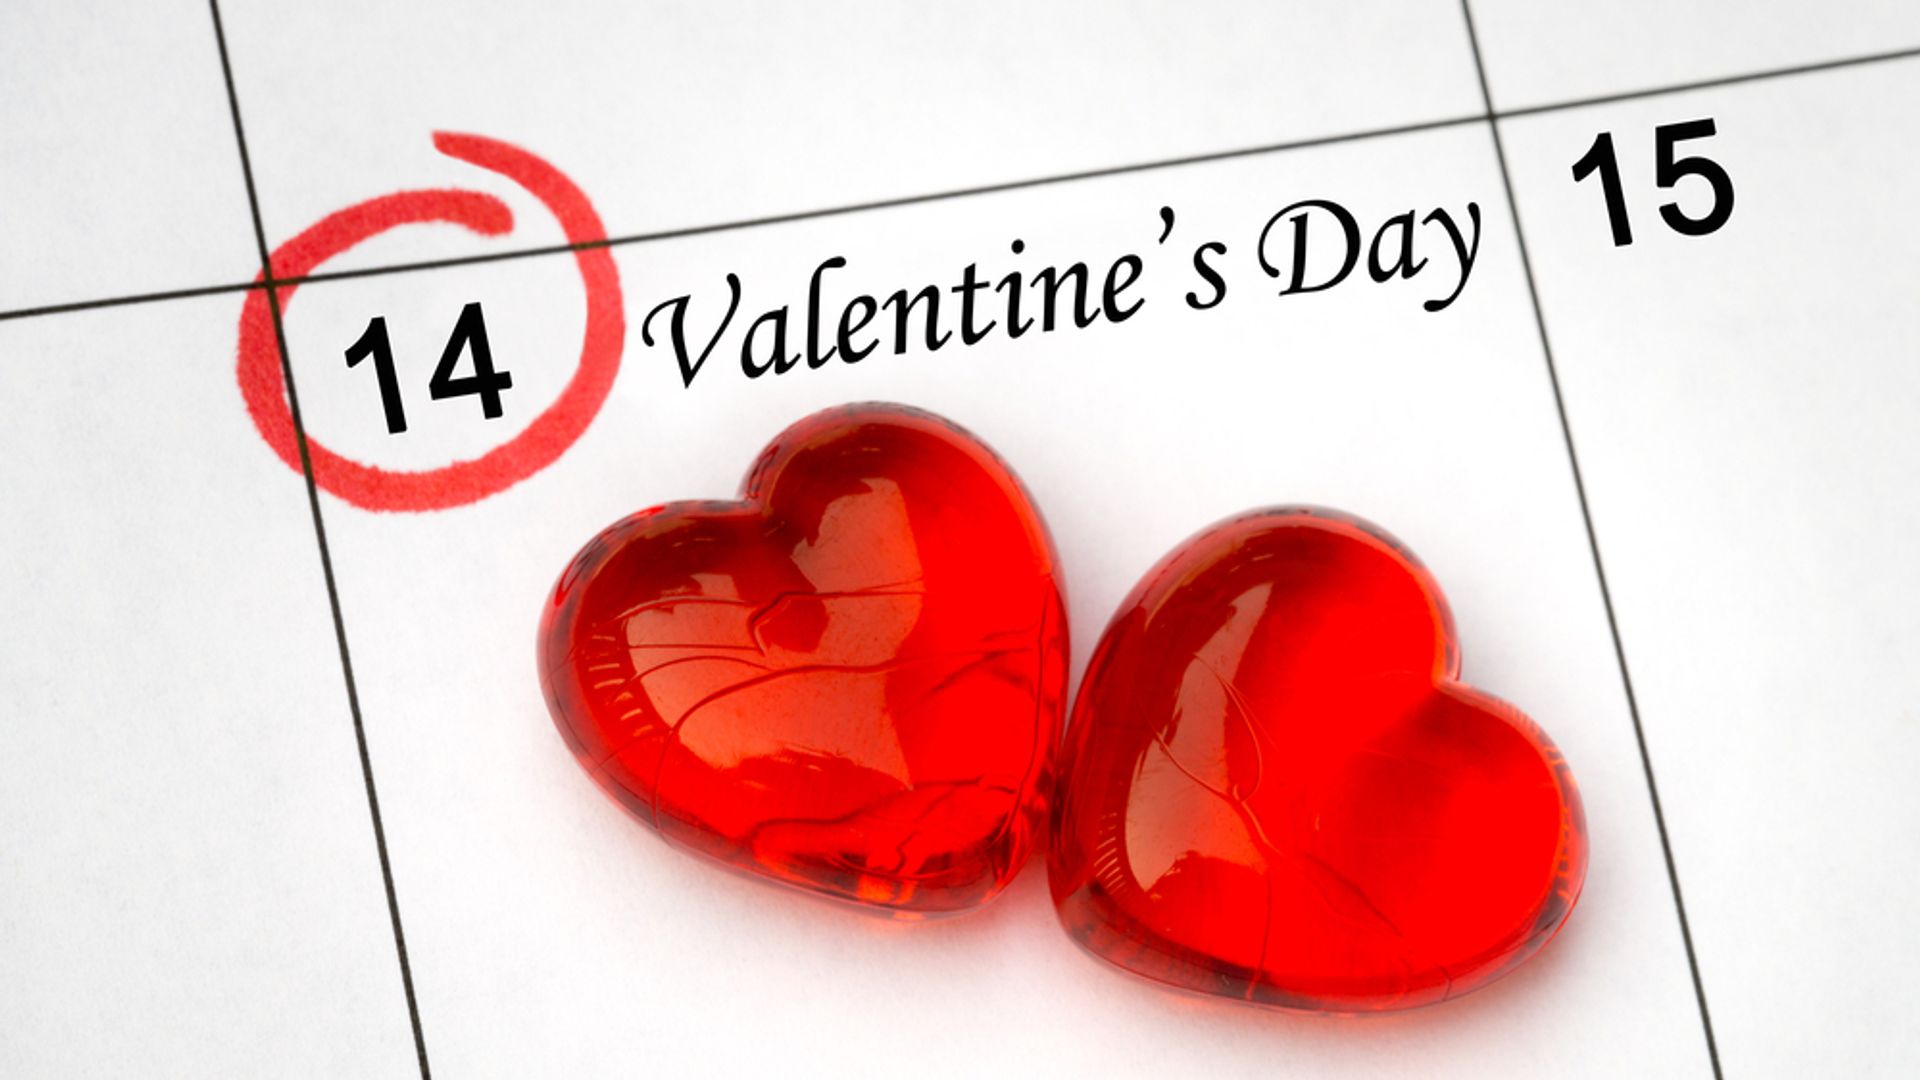 Lees ook: Valentijnsdag is de moeite waard, zelfs wanneer je wordt afgewezen